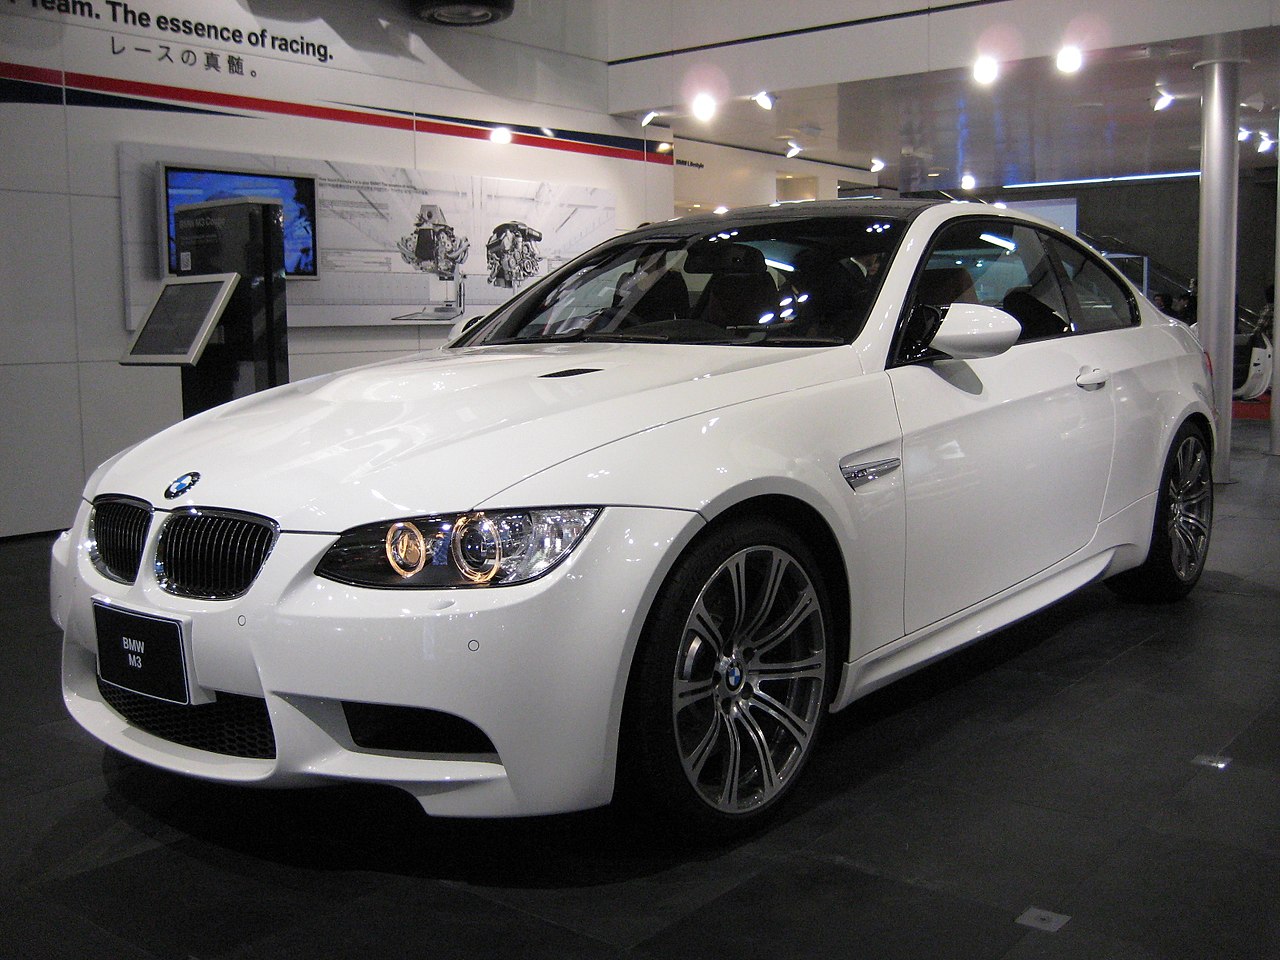 BMW E90 (M3) – Wikipedia